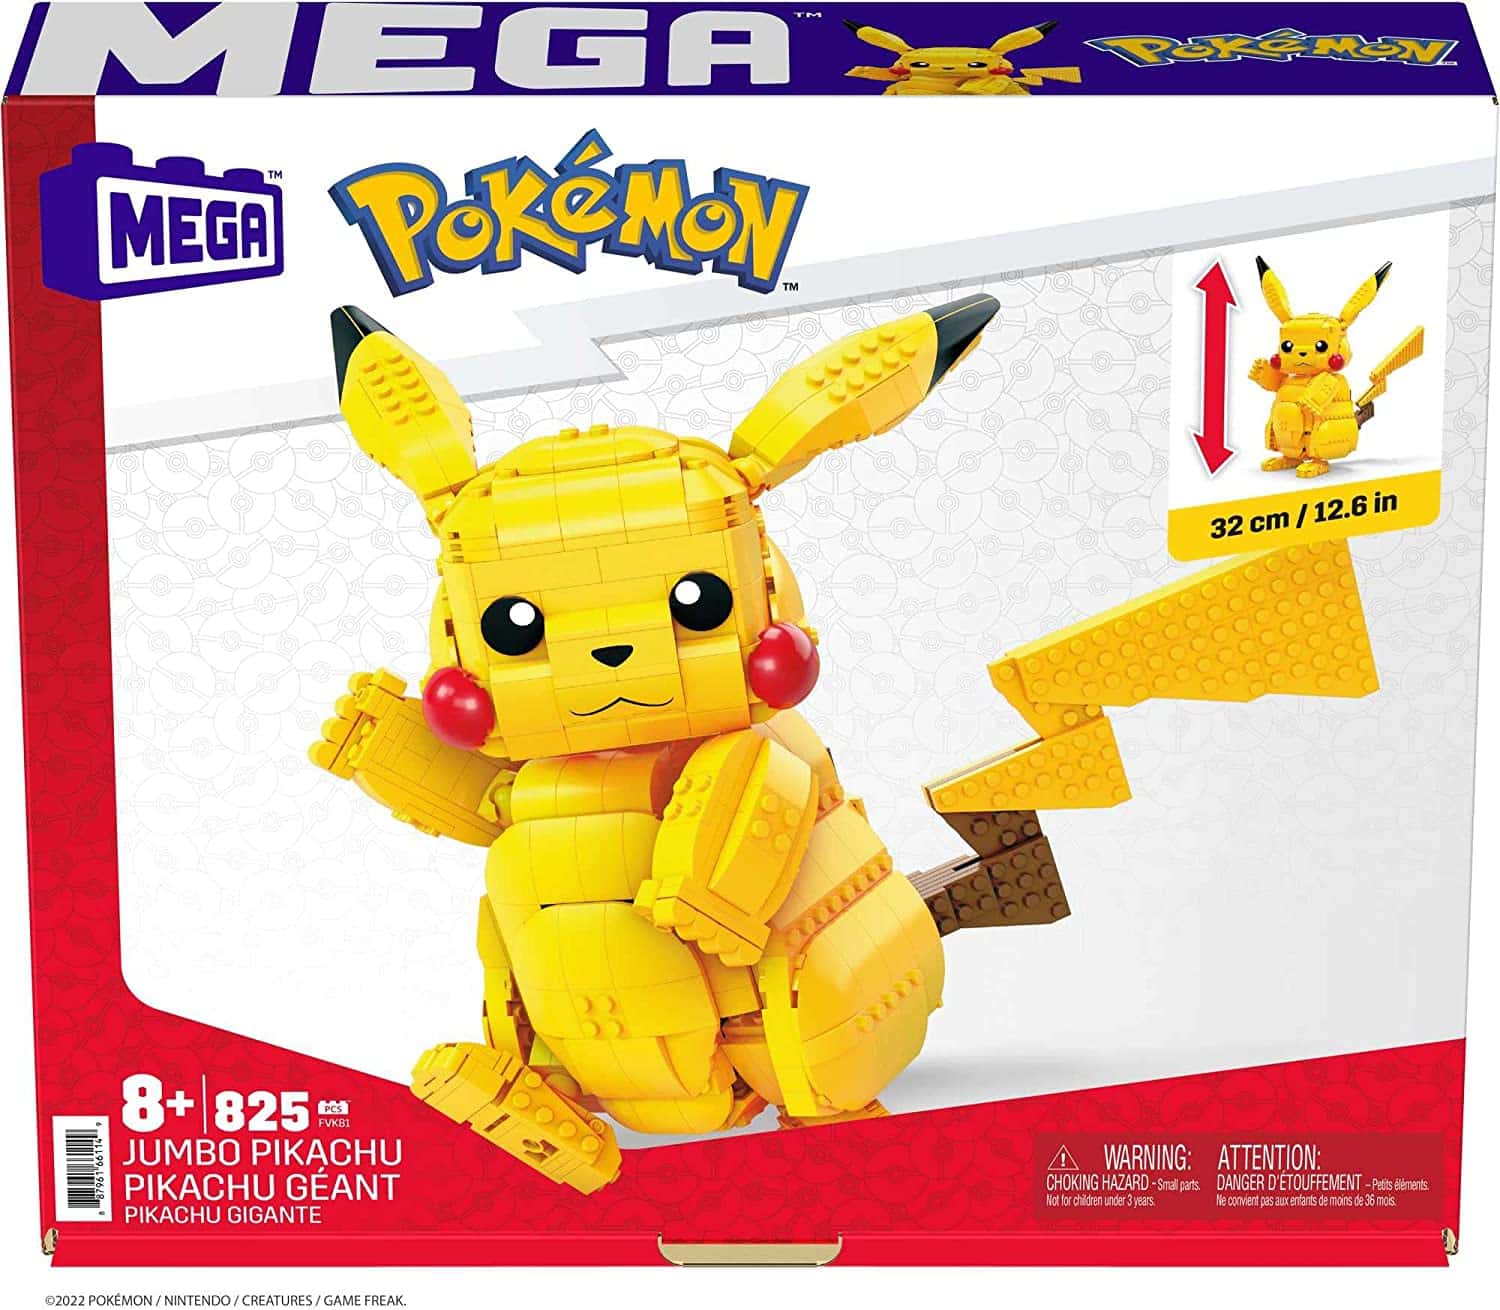 MEGA Construx FVK81 - Pokemon Pikachu Jumbo